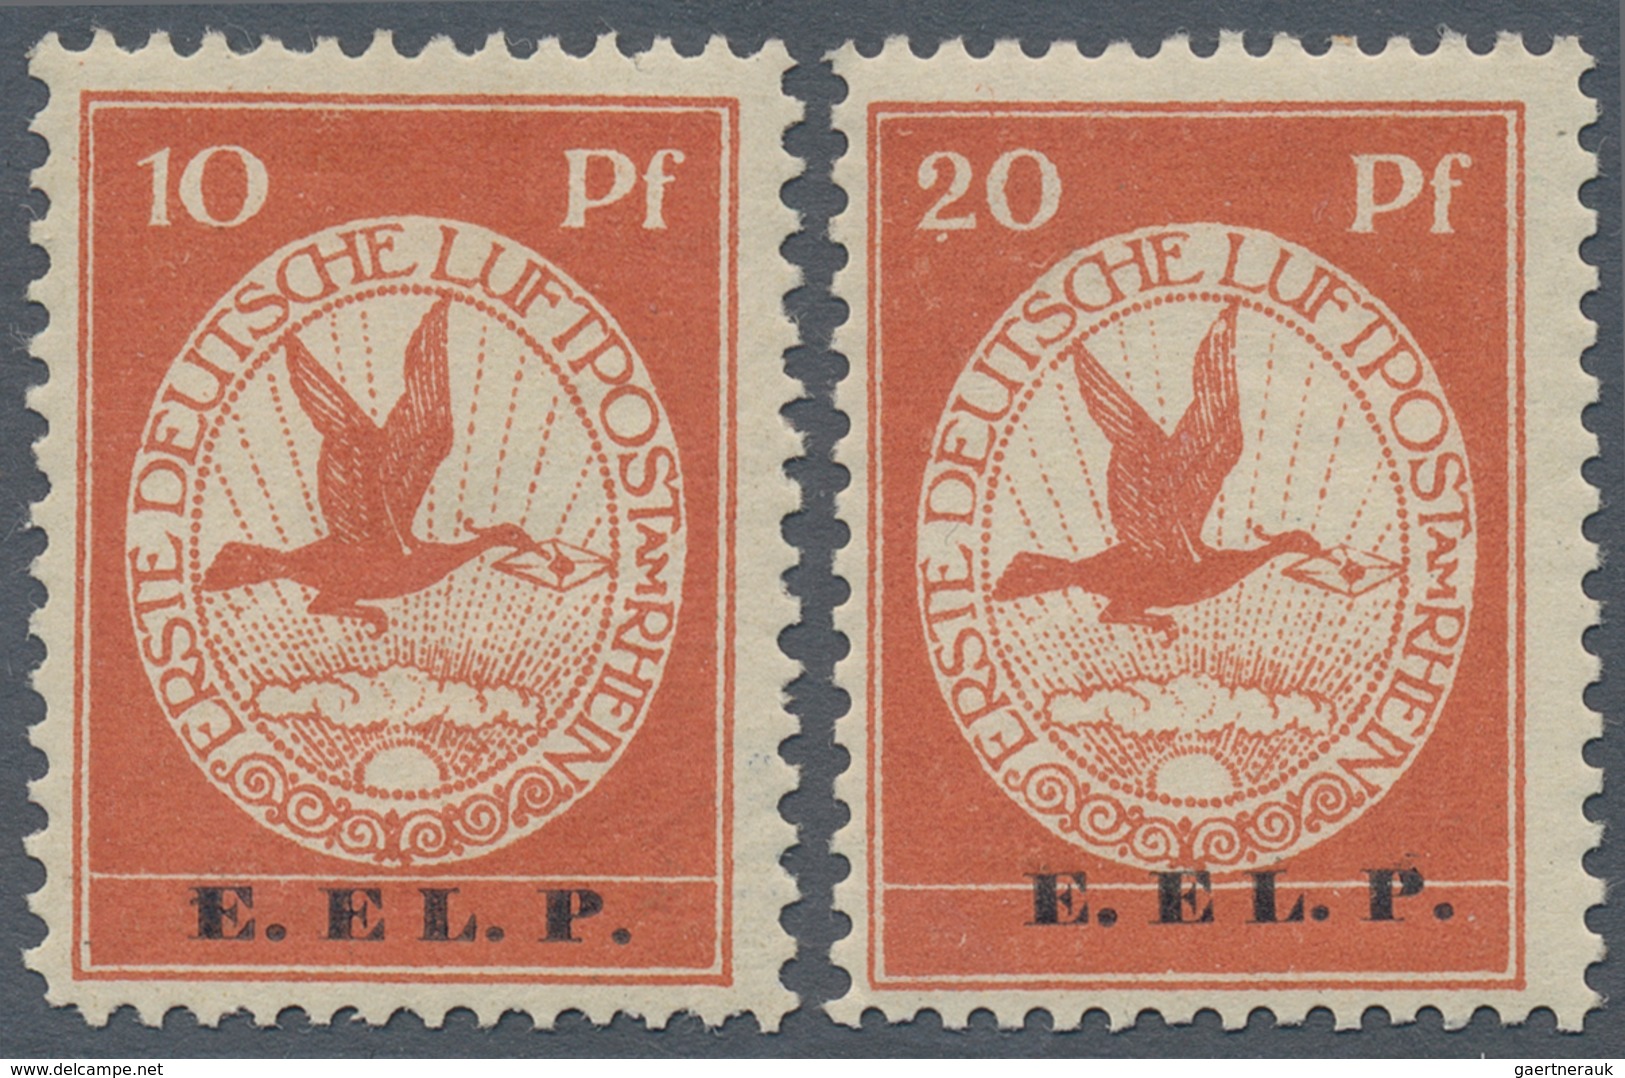 Deutsches Reich - Germania: 1912, 10 Und 20 Pfg. Flugpostmarken Mit Aufdruck“ E. EL. P.“ Komplett, K - Nuovi